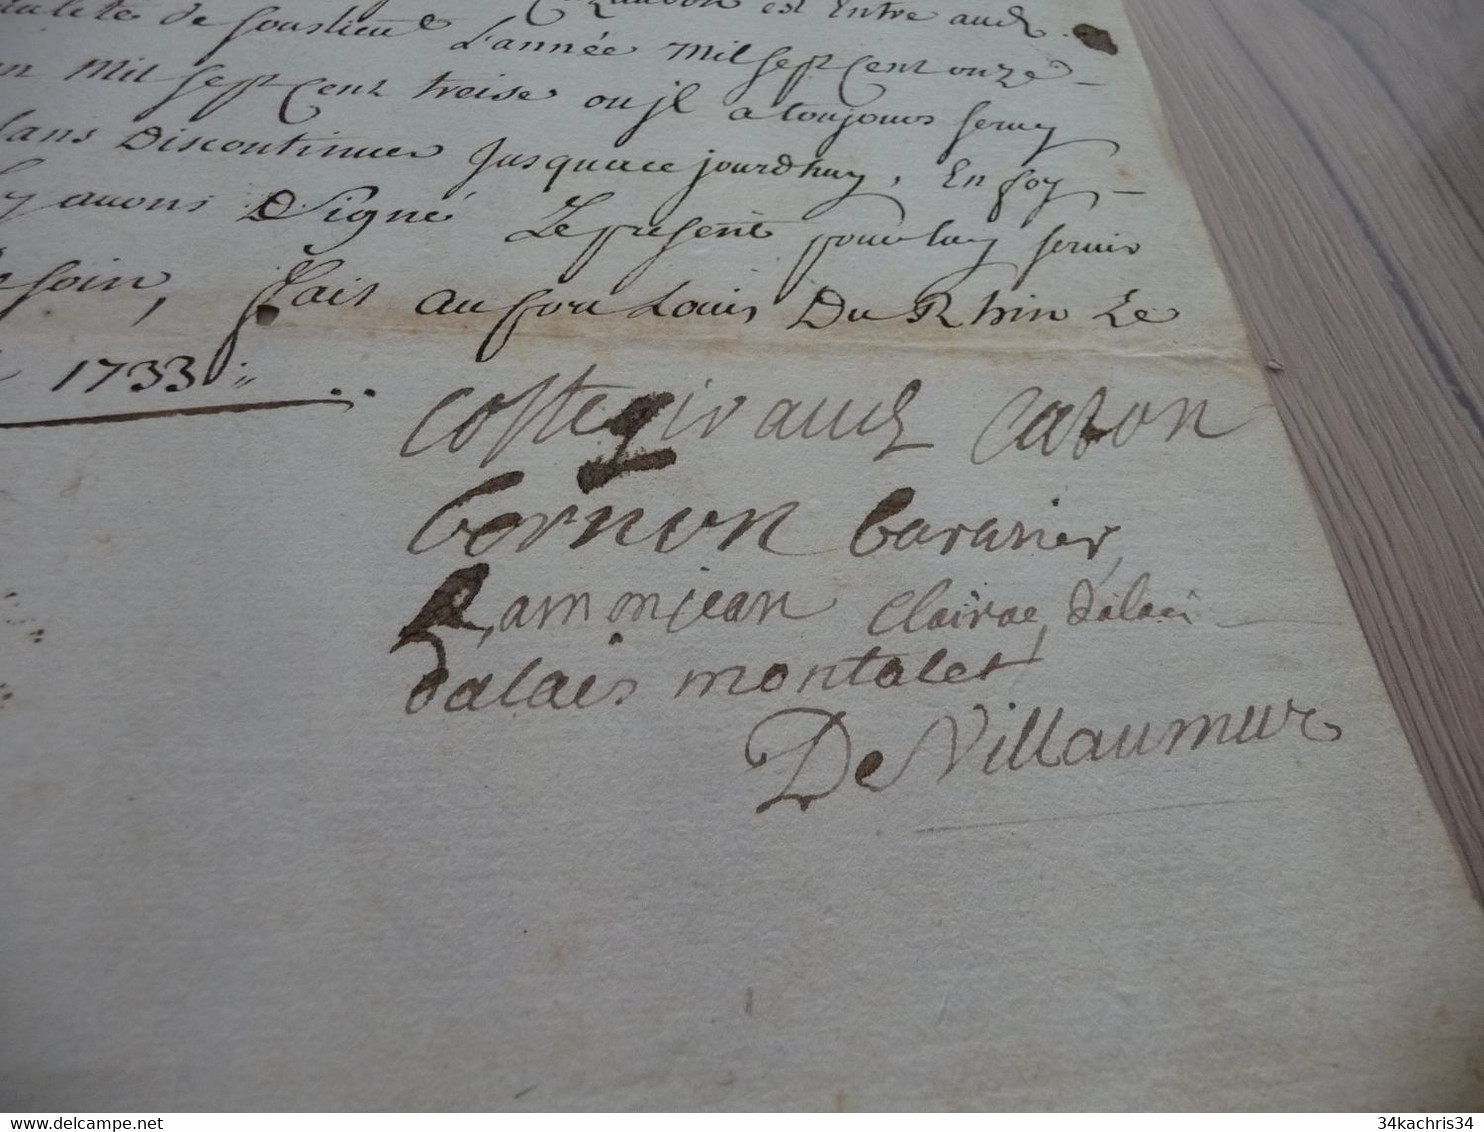 Pièce Signée De Villamur Régiment Du Gatinois Certification Fort Louis Du Rhin 1733 Sous Lieutenant Cazaubon - Documenten